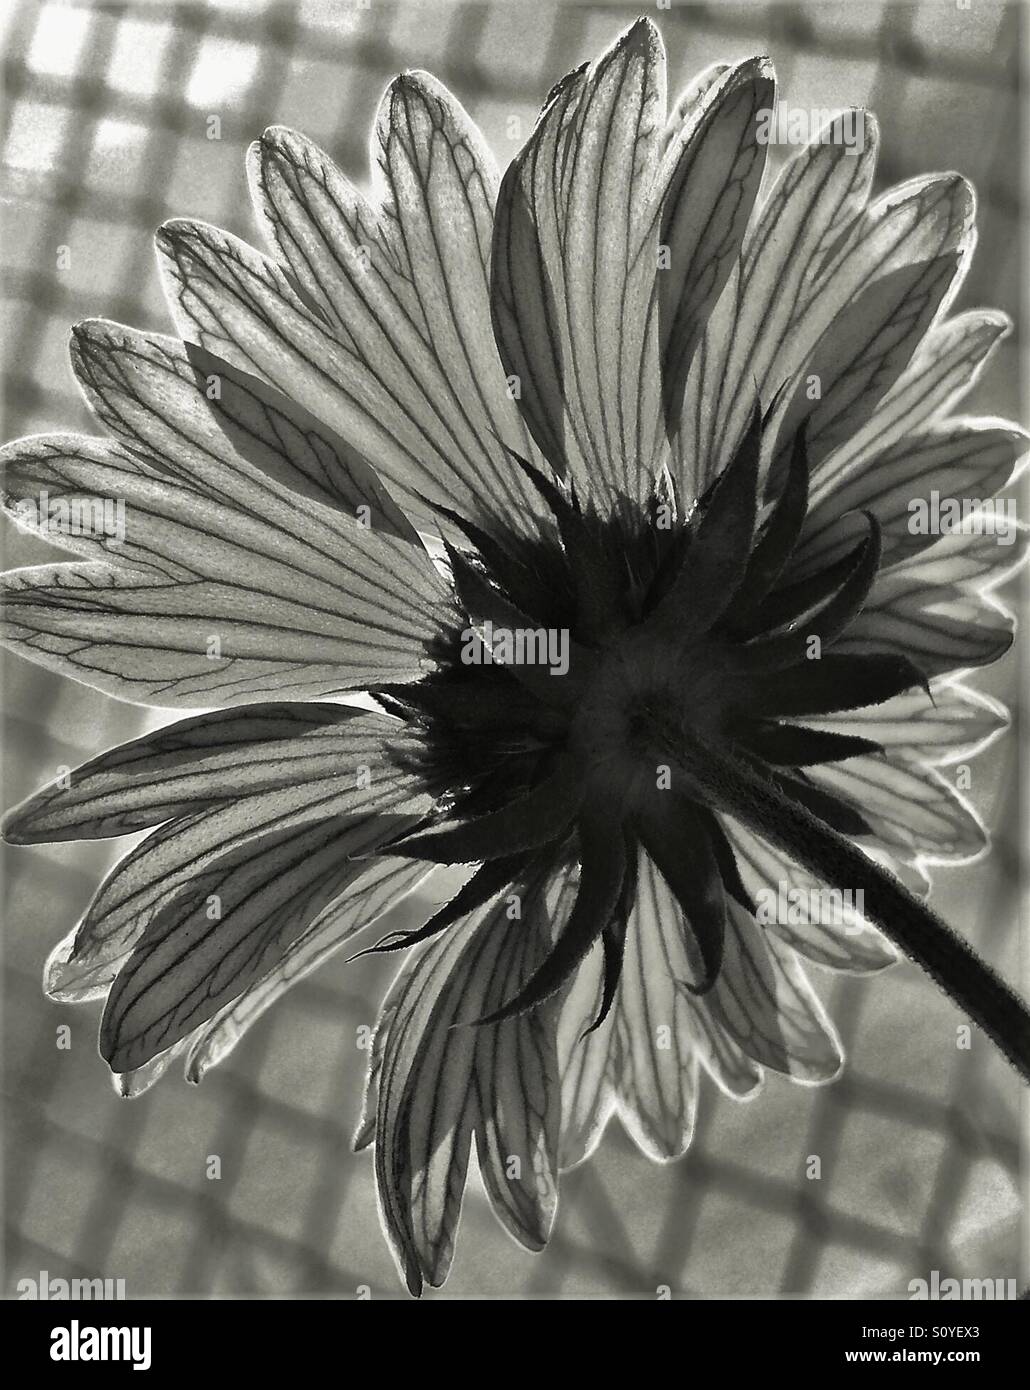 Fiore in corrispondenza della riga in bianco e nero, vista posteriore con il petalo dettaglio Foto Stock